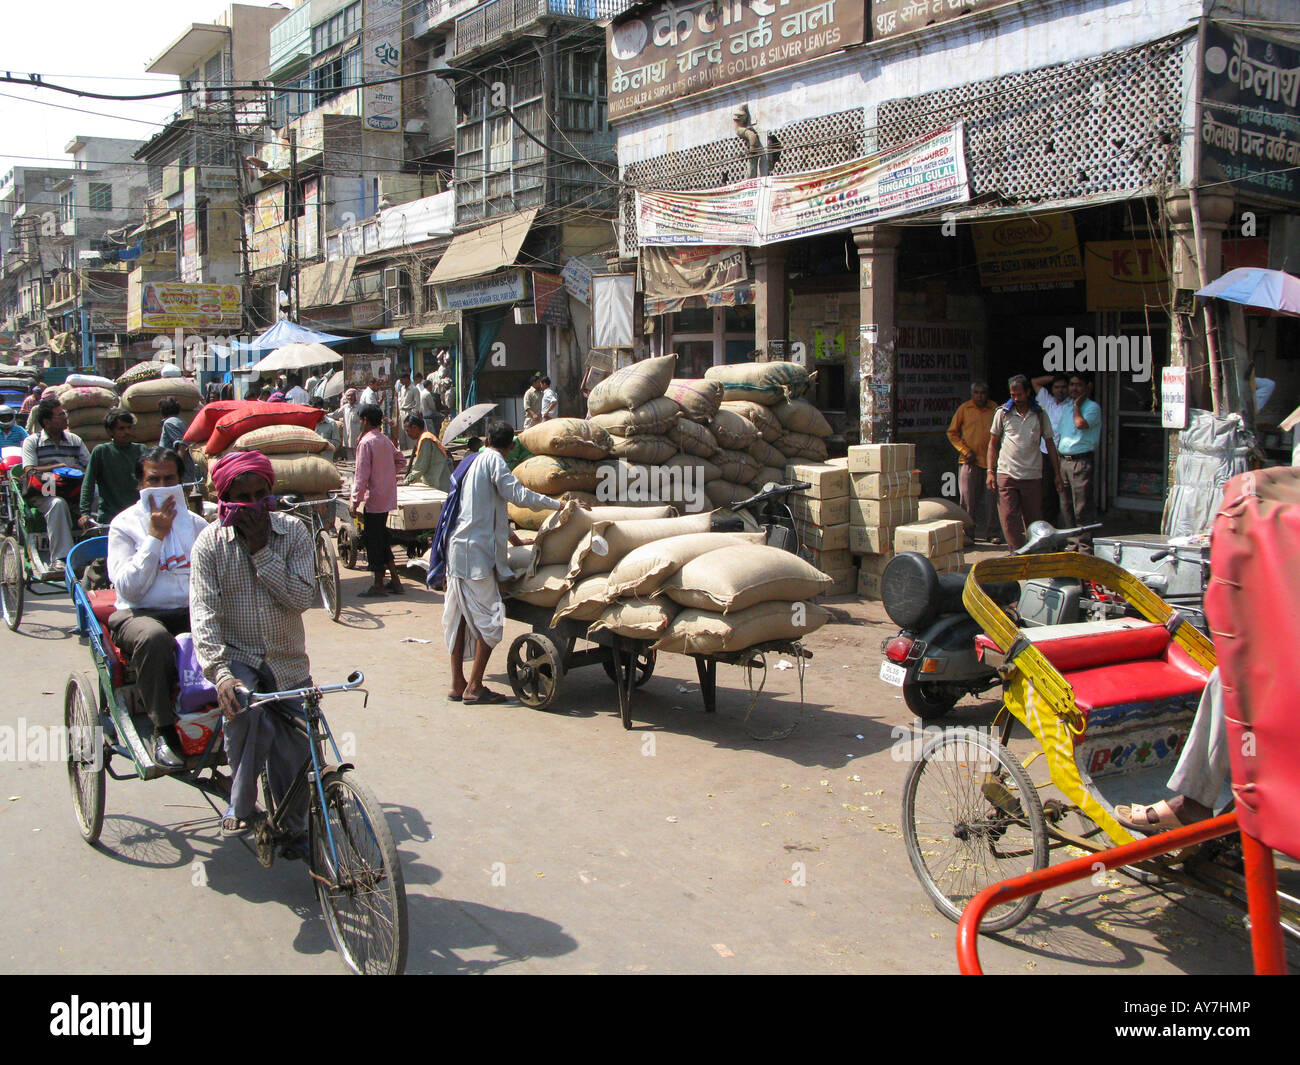 Street scene in Old Delhi, India Stock Photo